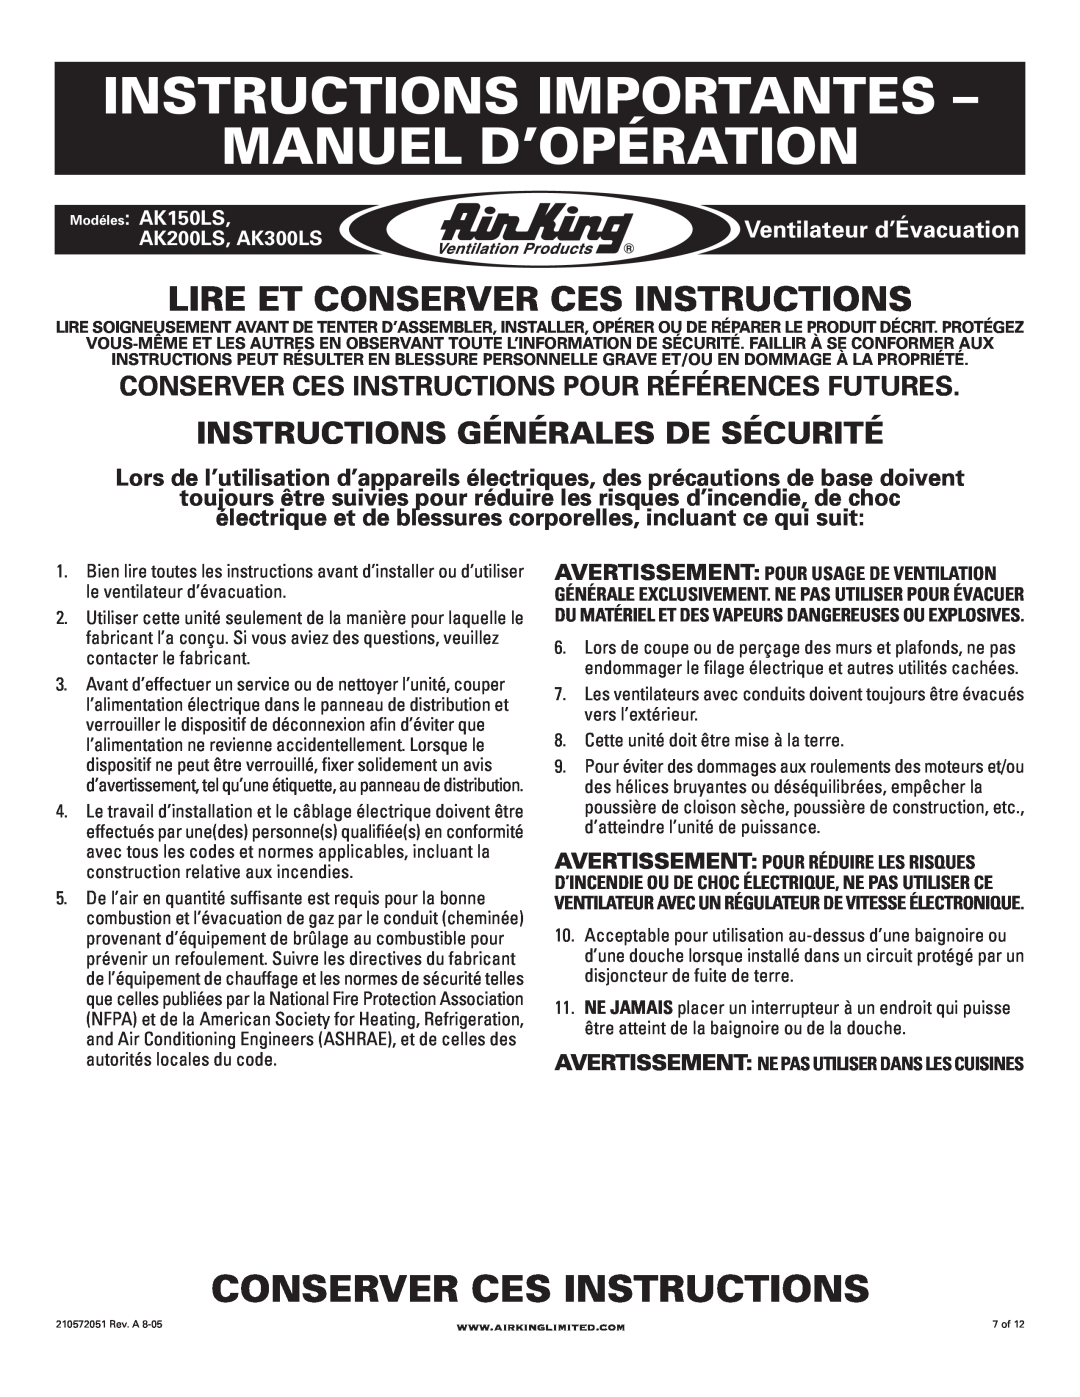 Air King AK300LS manual Instructions Importantes Manuel D’Opération, Conserver Ces Instructions, Ventilateur d’Évacuation 